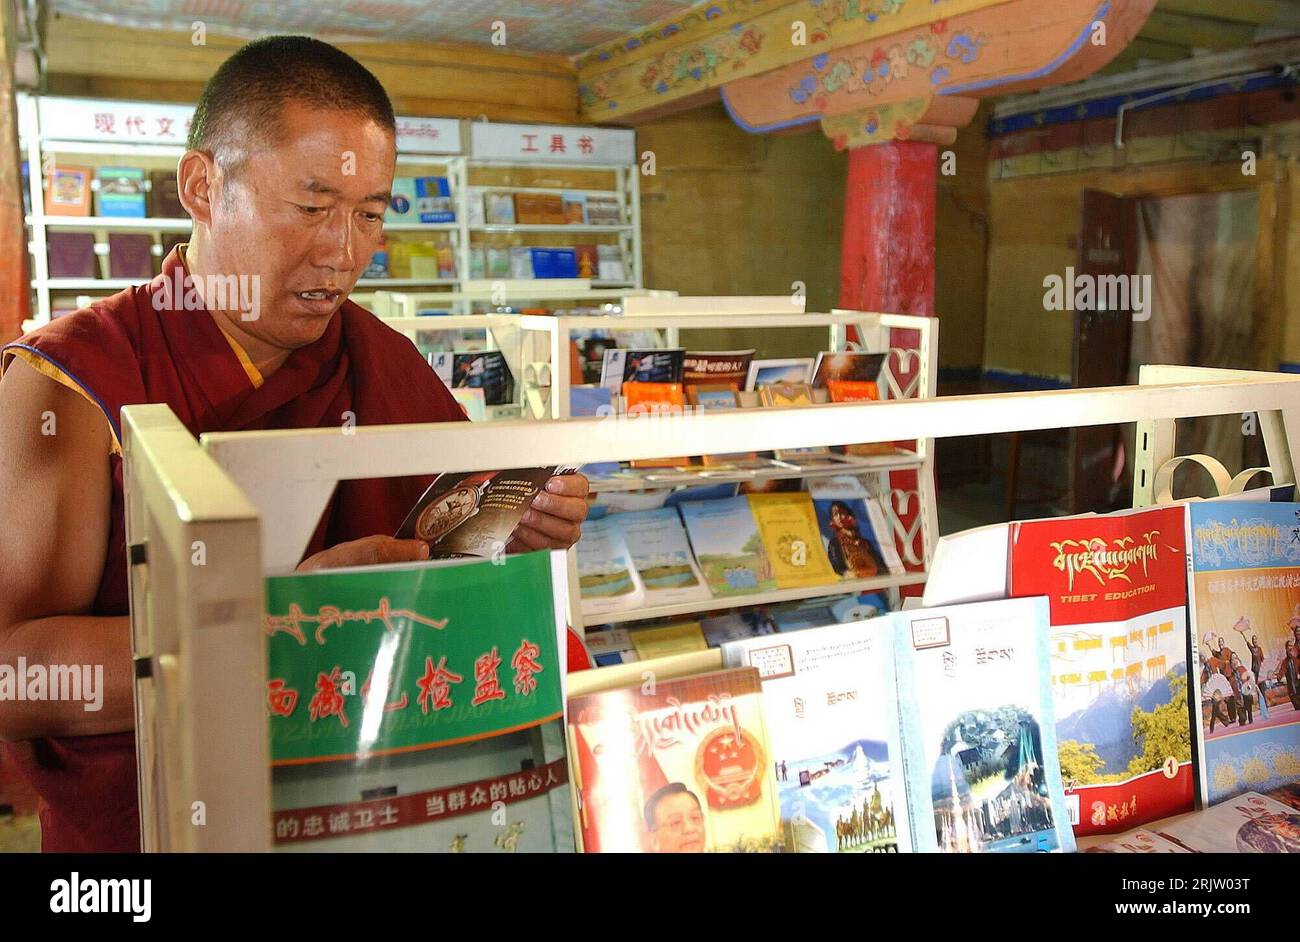 Bildnummer: 51804206  Datum: 02.04.2007  Copyright: imago/Xinhua Buddhistischer Mönch liest ein Buch in der Bibliothek des  Drepung Klosters in Lhasa - PUBLICATIONxNOTxINxCHN, Personen; 2007, Lhasa, Mönche, Autonome Region Tibet, buddhistisch, Einheimische, Einheimischer, Tibeter, Buddhist, Buddhisten, Bücherei, Büchereien, Bücher, lesen, Bibliotheken; , quer, Kbdig, Einzelbild, China, Buddhismus, Religion,  , Stock Photo